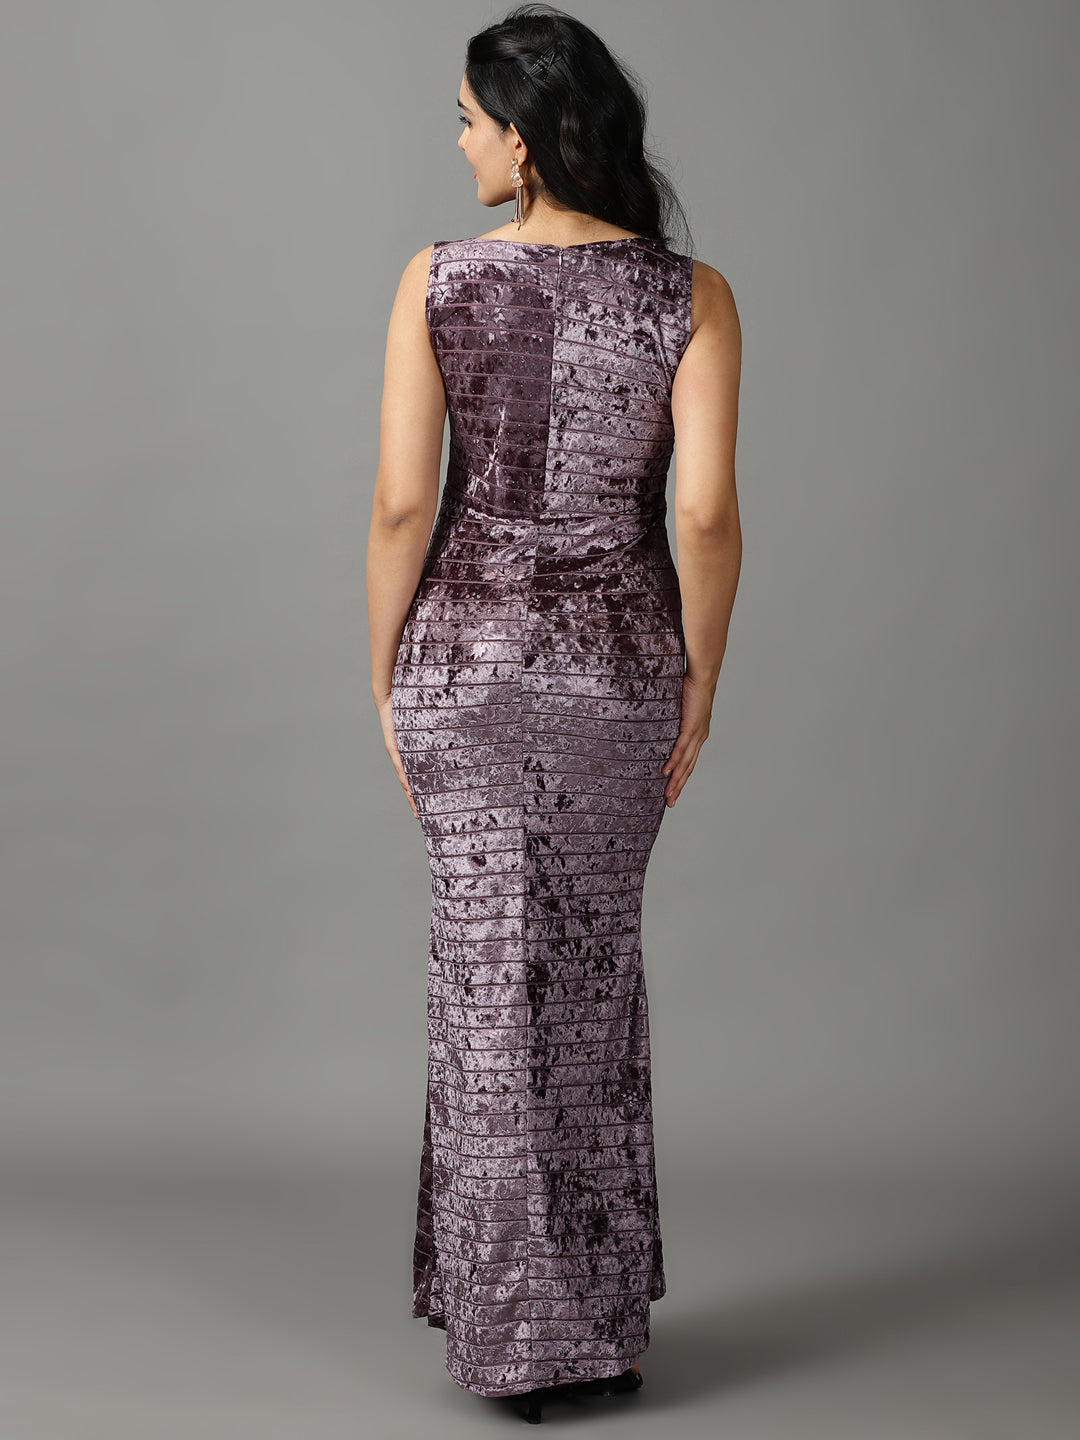 Women's Violet Embellished Maxi Dress